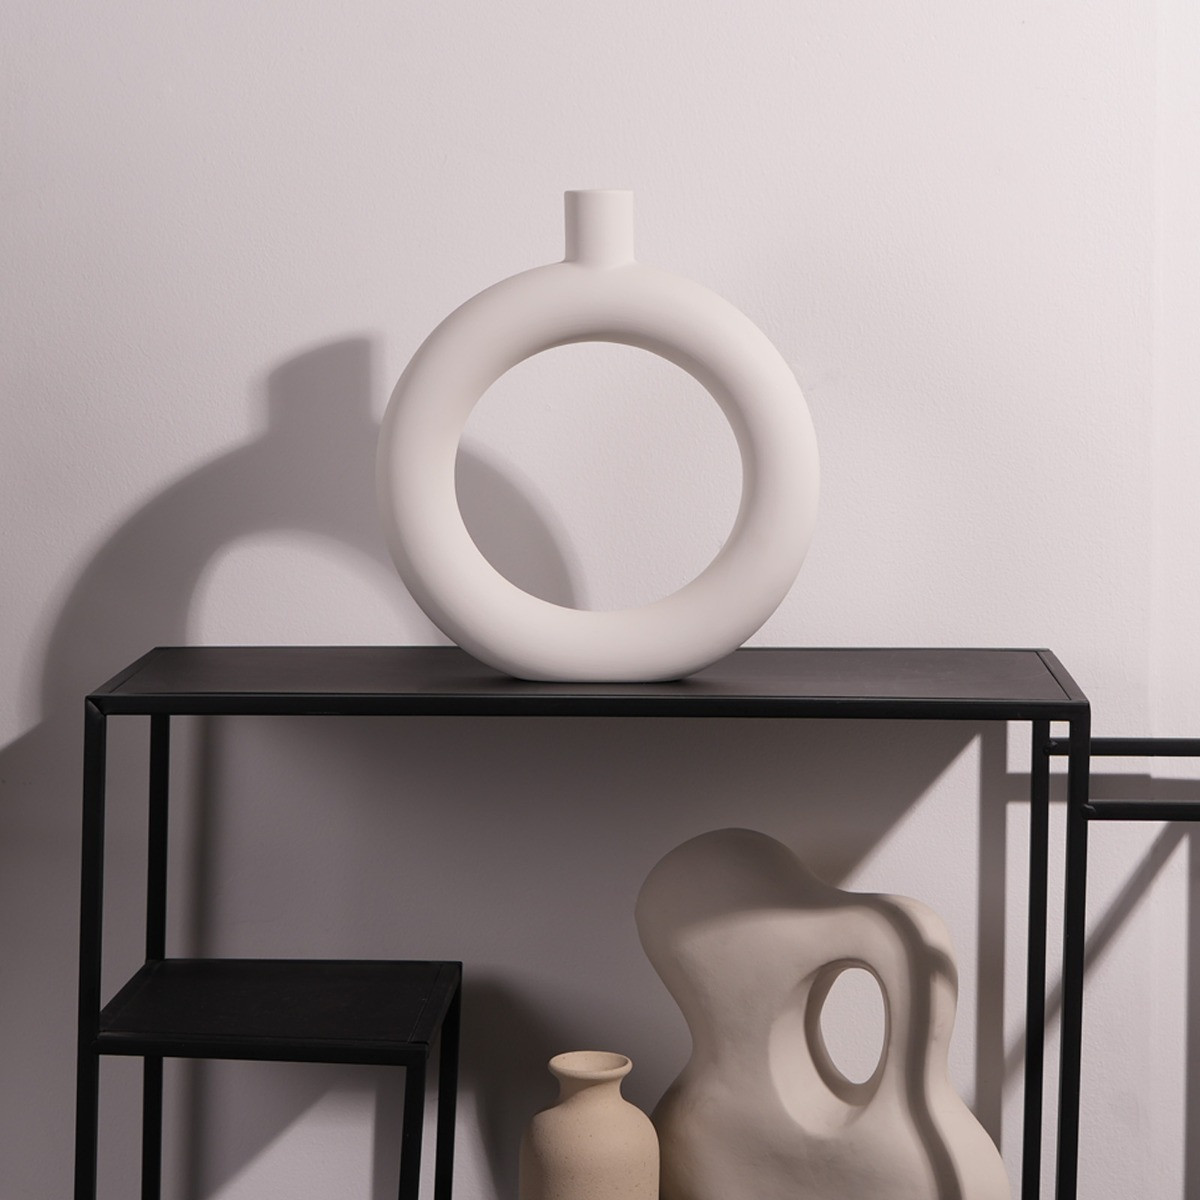 OHS Donut Ceramic Vase - White>